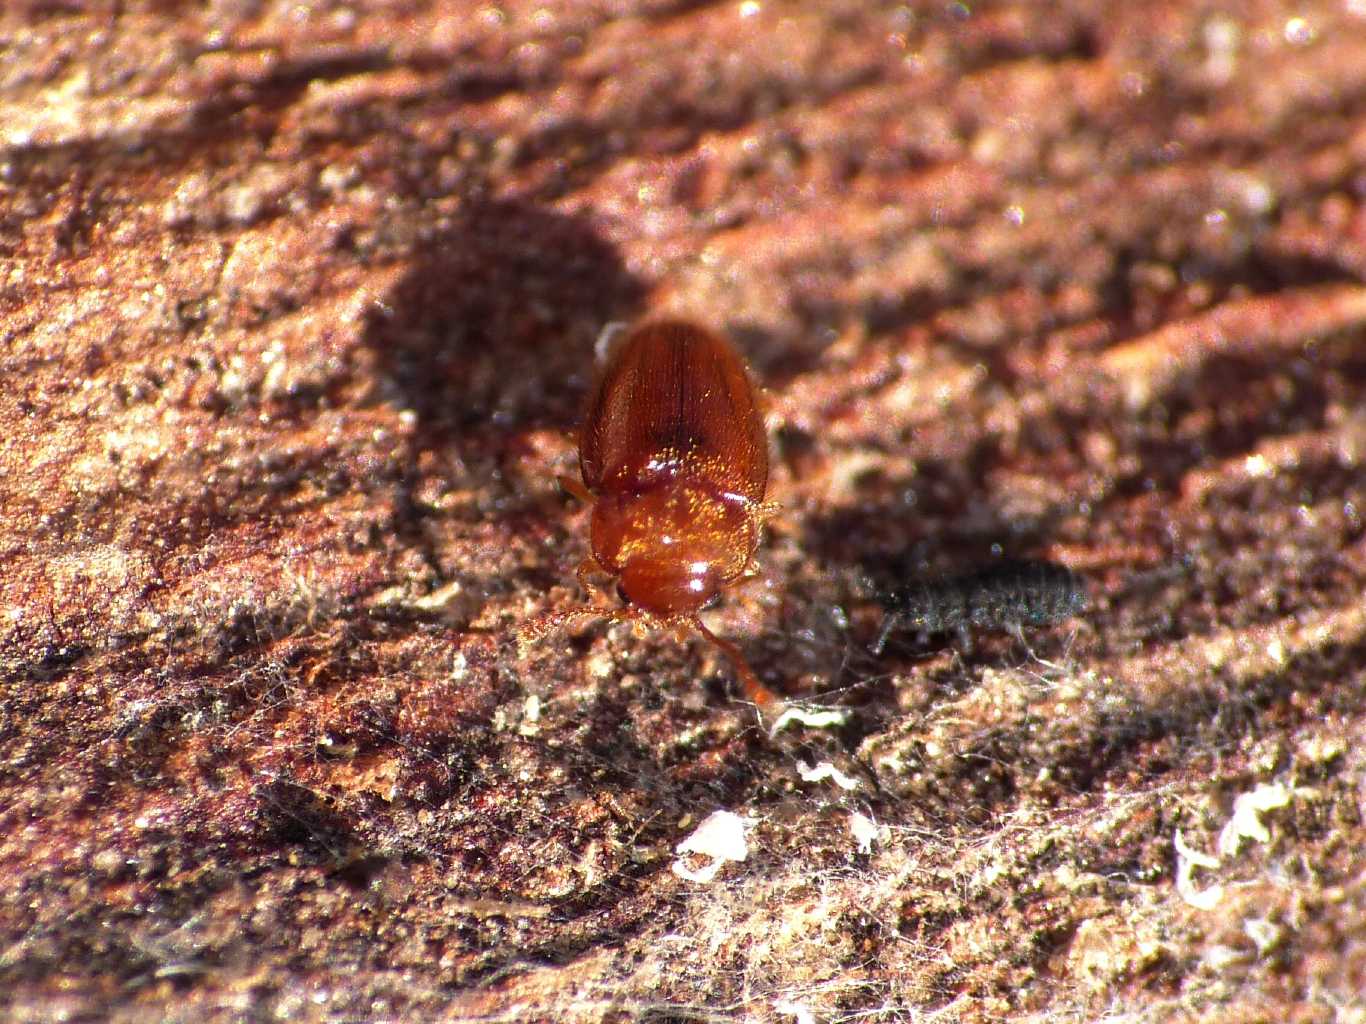 Rhyzobius sp. (Coccinellidae)